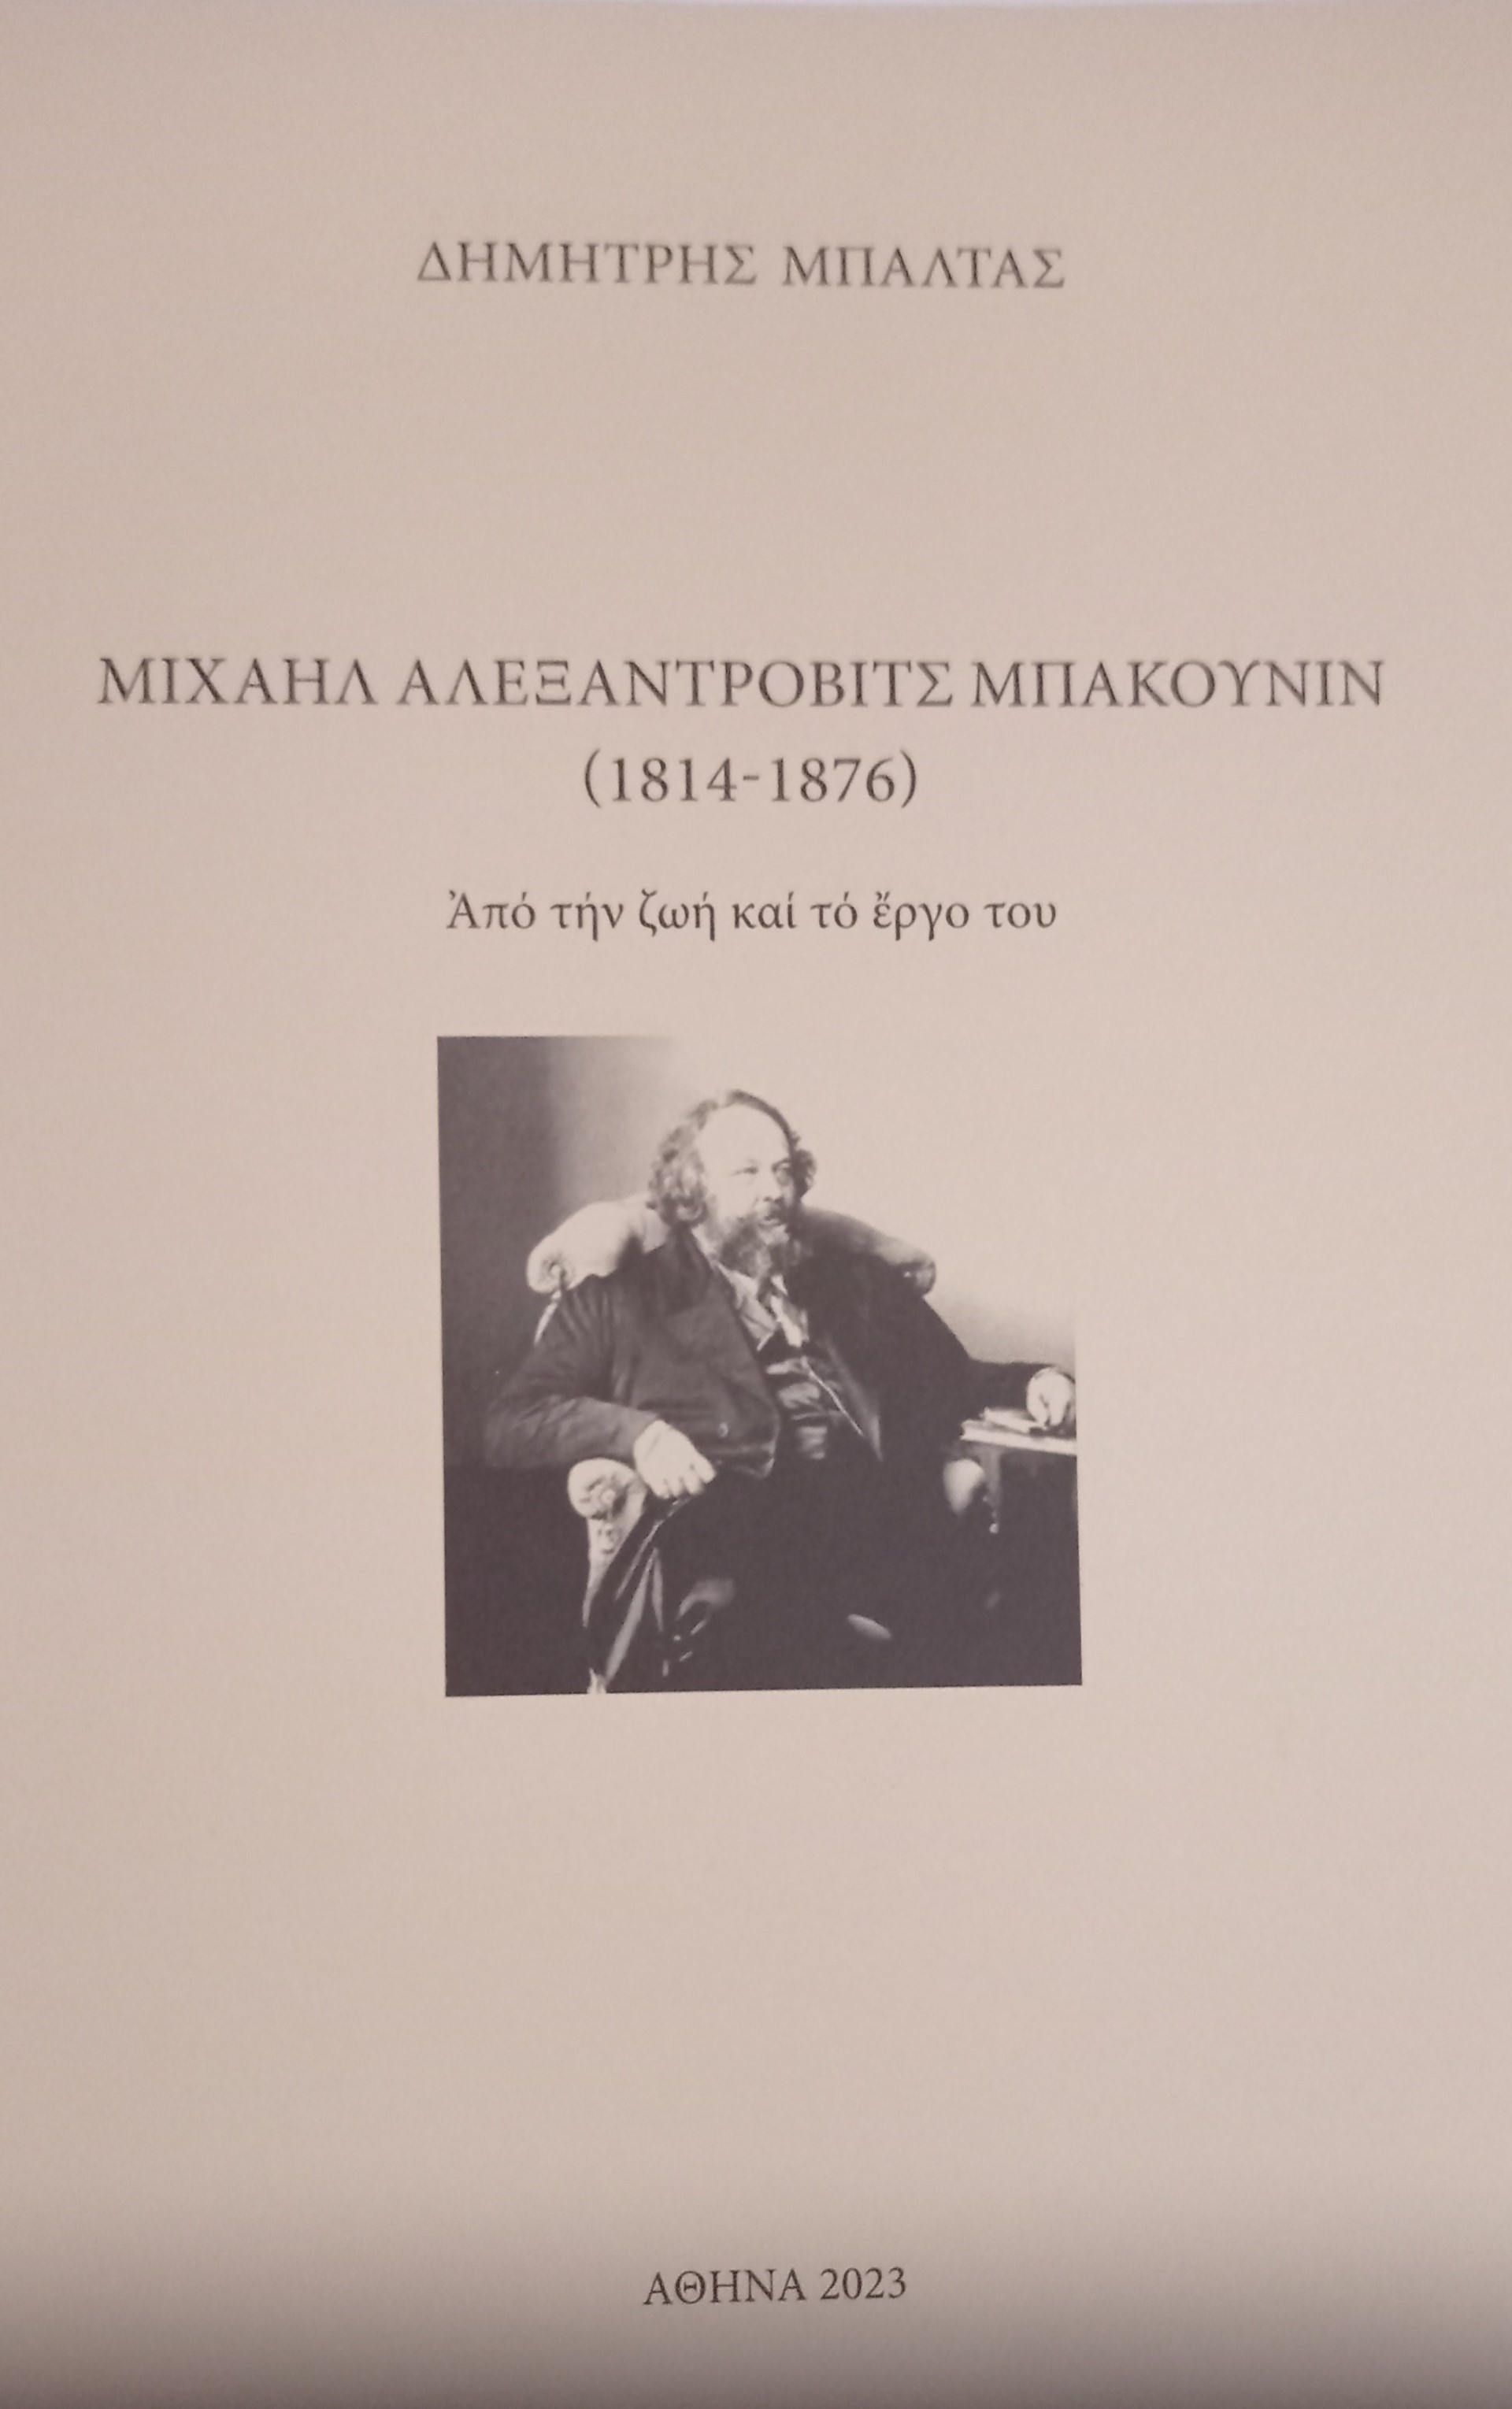 Μιχαήλ Αλεξάντροβιτς Μπακούνιν (1814-1876). Από την ζωή και το έργο του